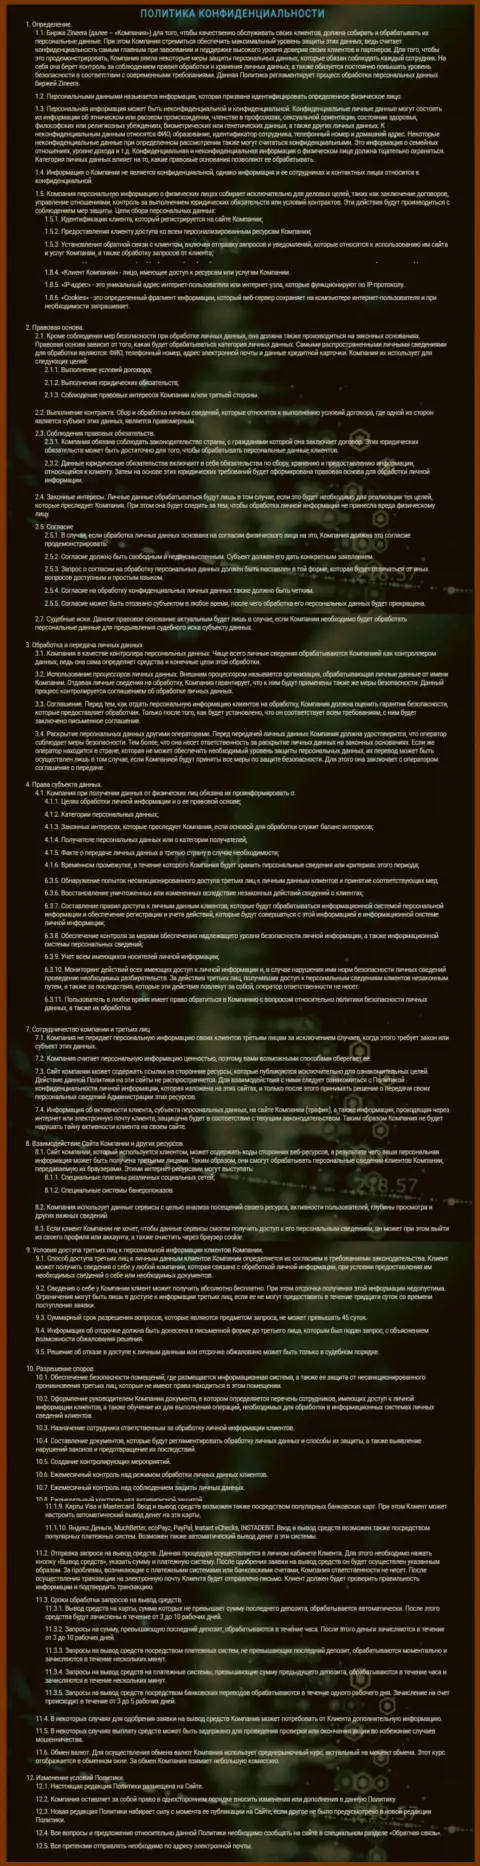 Политика конфиденциальности брокерской компании Зиннейра Эксчендж, представленная на официальном интернет-ресурсе